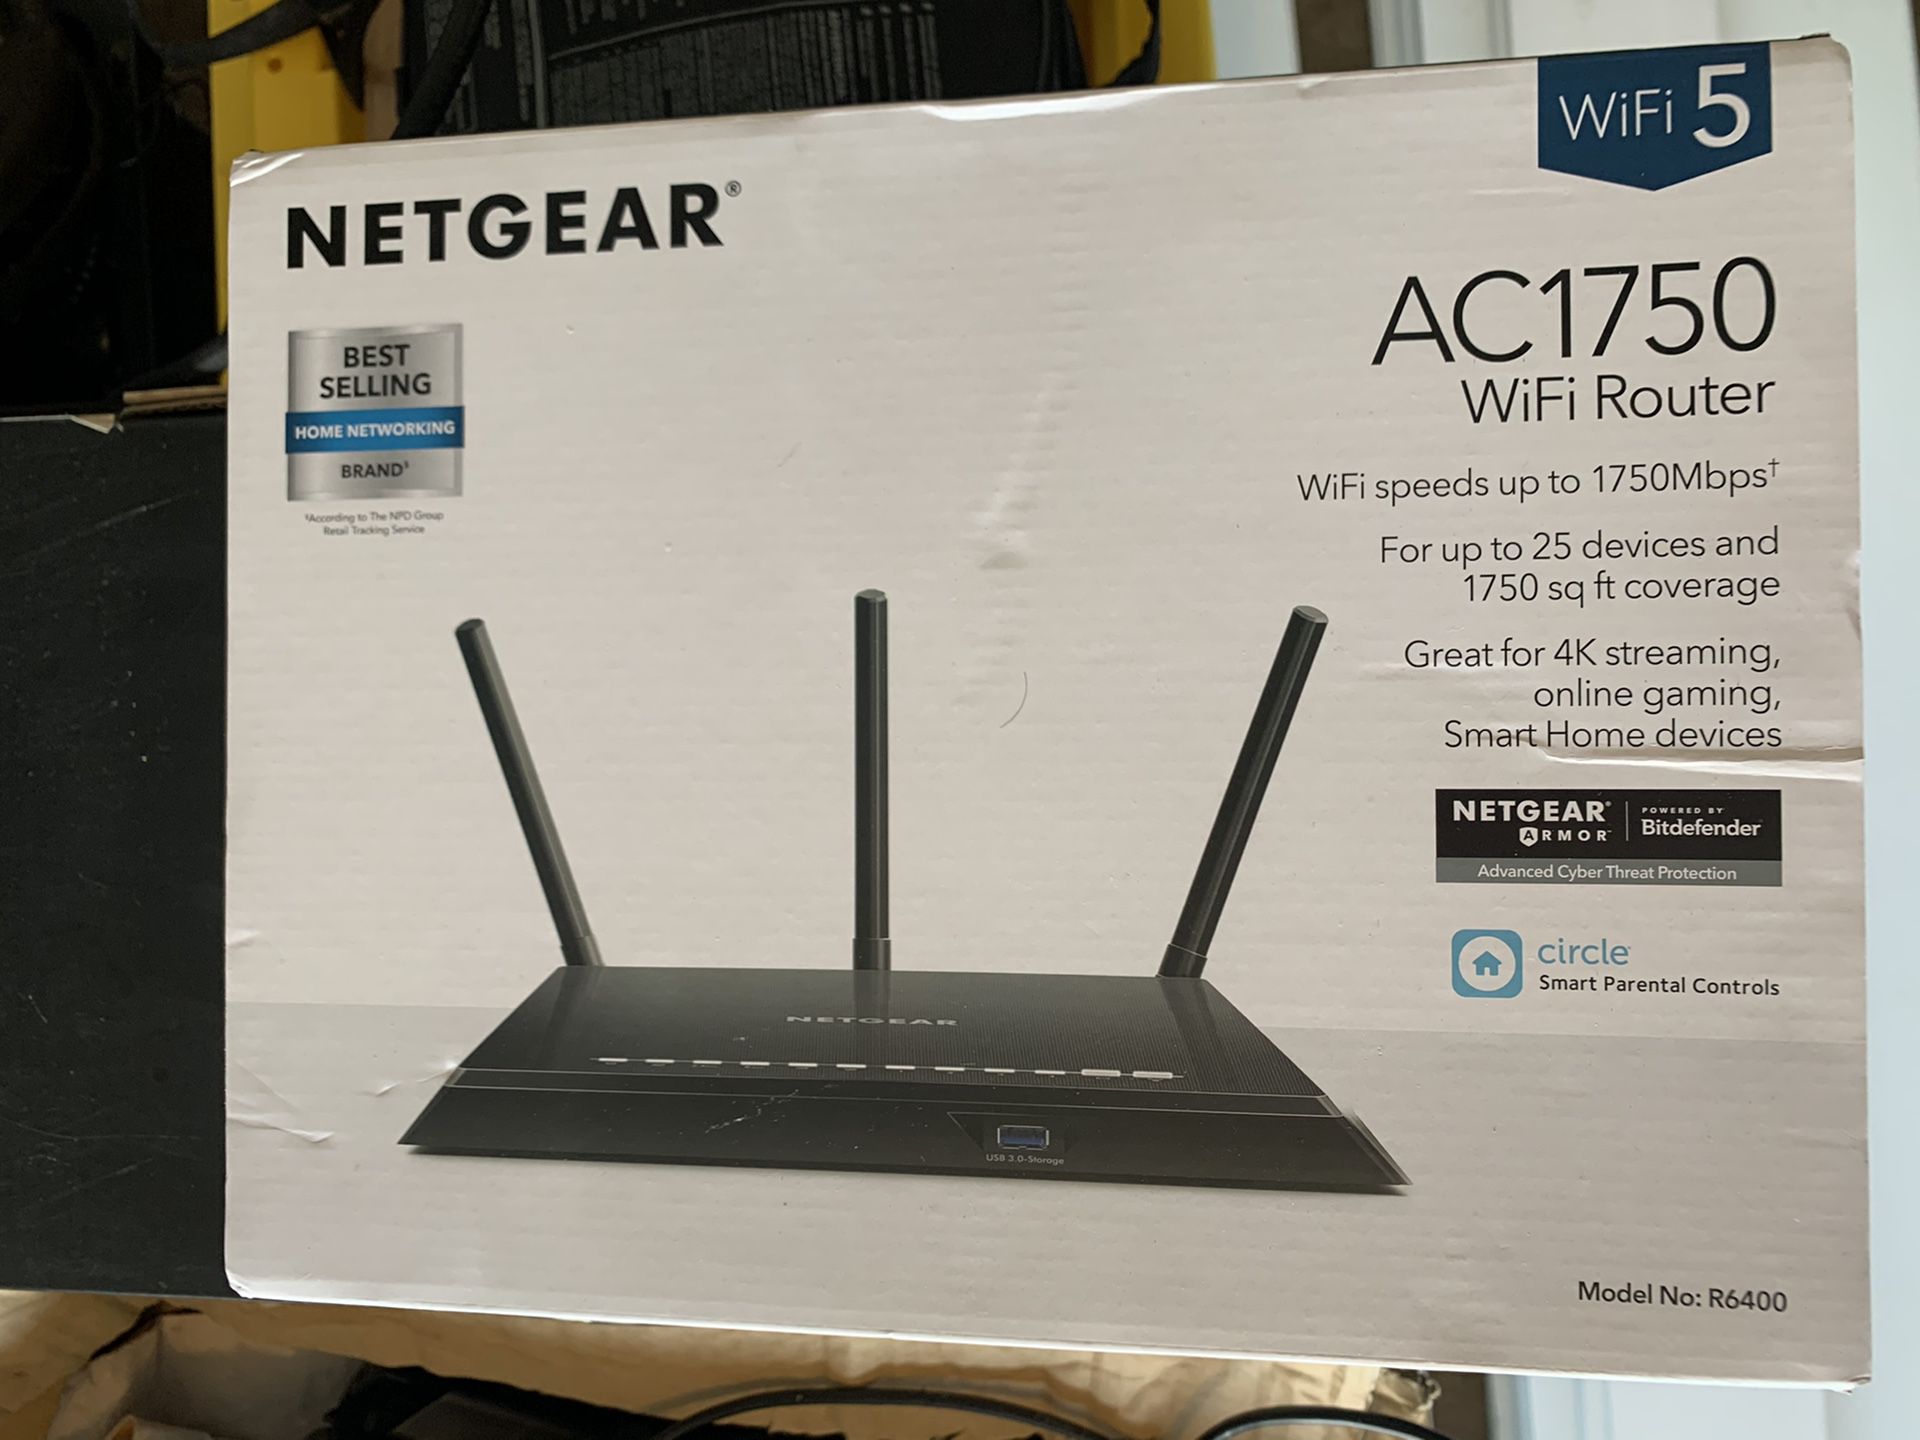 Netgear ac1760 router